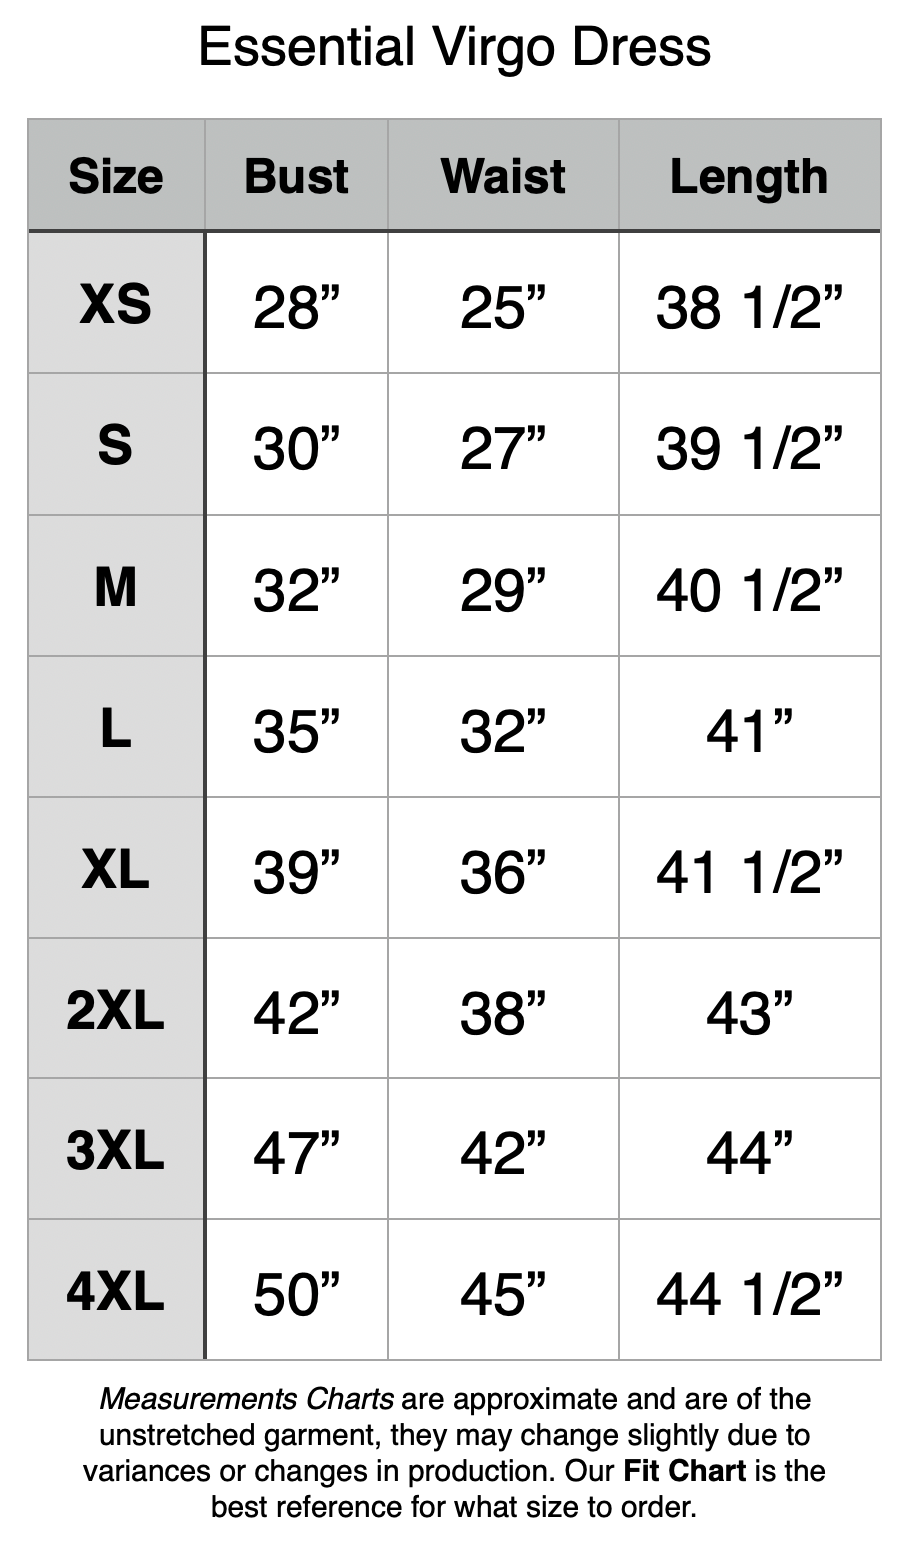 Essential Virgo Dress - XS: 28" Bust, 25" Waist, 38.5" Length. S: 30" Bust, 27" Waist, 39.5" Length. M: 32" Bust, 29" Waist, 40.5" Length. L: 35" Bust, 32" Waist, 41" Length. XL: 39" Bust, 36" Waist, 41.5" Length. 2XL: 42" Bust, 38" Waist, 43" Length. 3XL: 47" Bust, 42" Waist, 44" Length. 4XL: 50" Bust, 45" Waist, 44.5" Length.